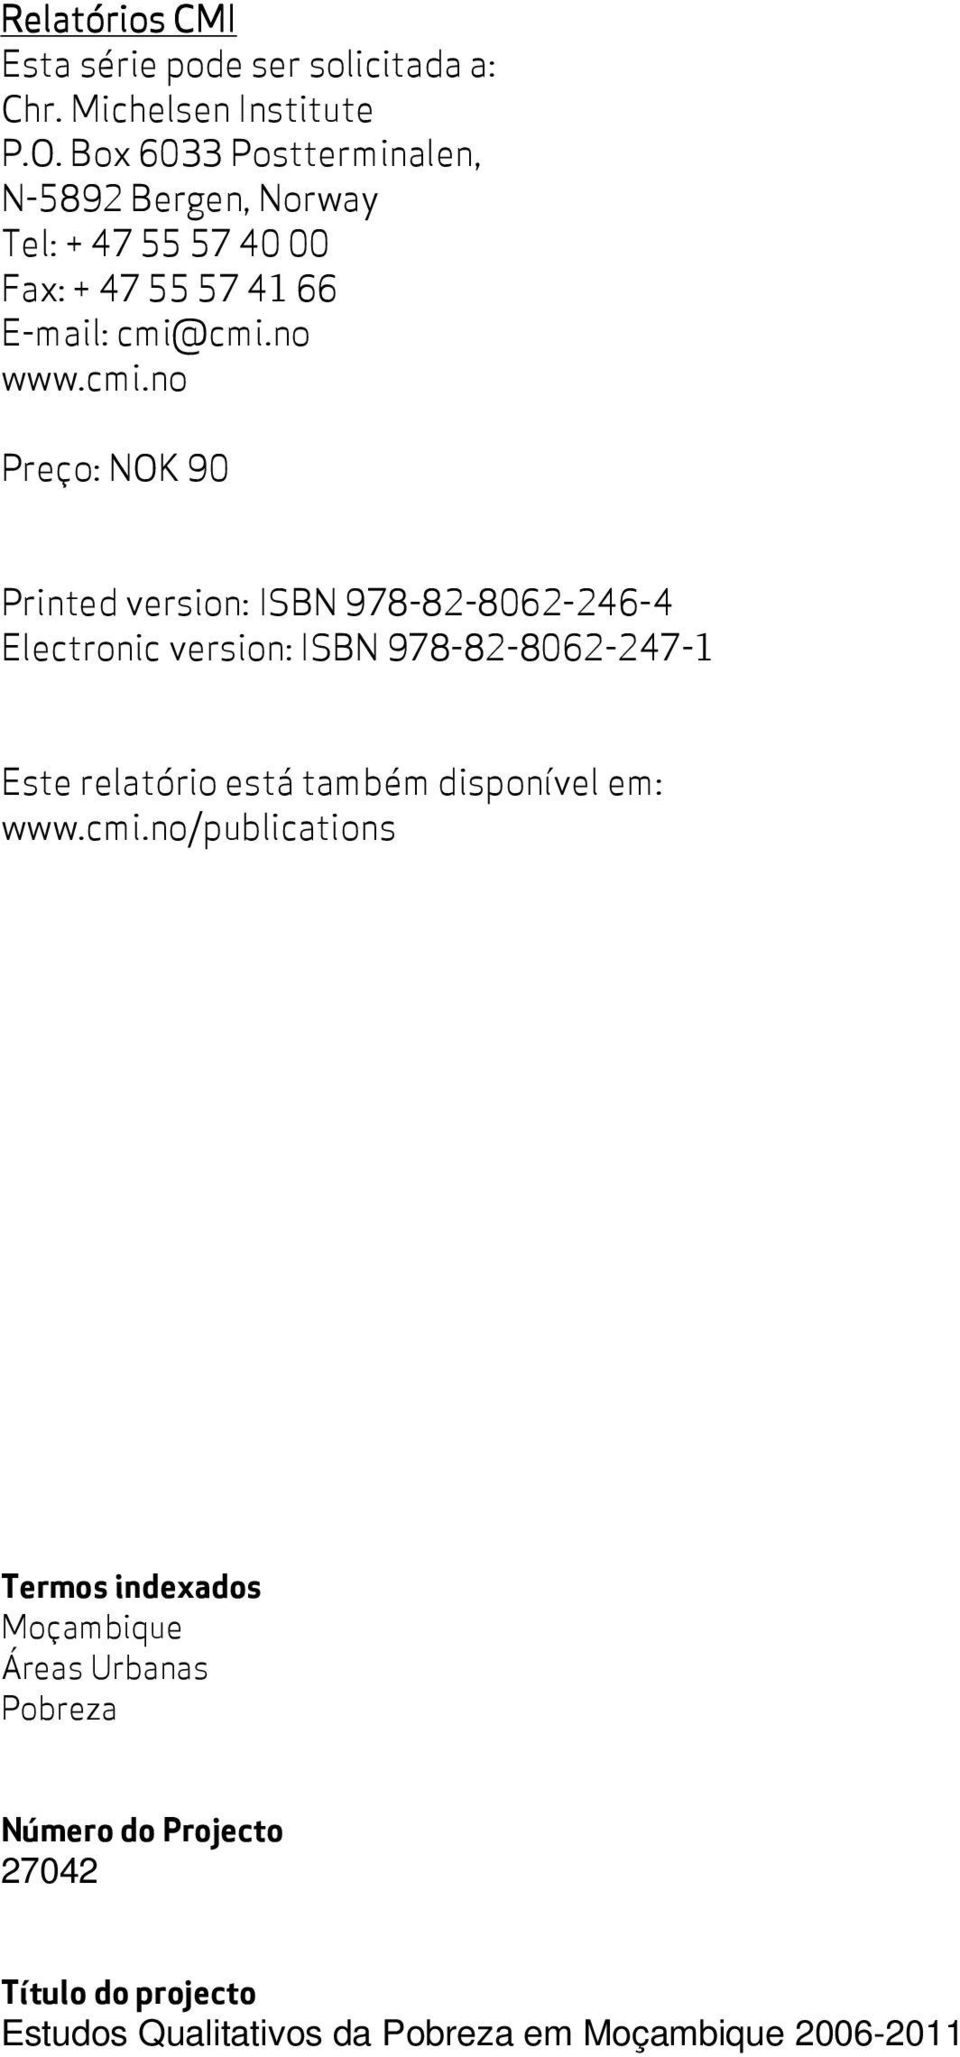 cmi.no www.cmi.no Preço: NOK 90 Printed version: ISBN 978-82-8062-246-4 Electronic version: ISBN 978-82-8062-247-1 Este